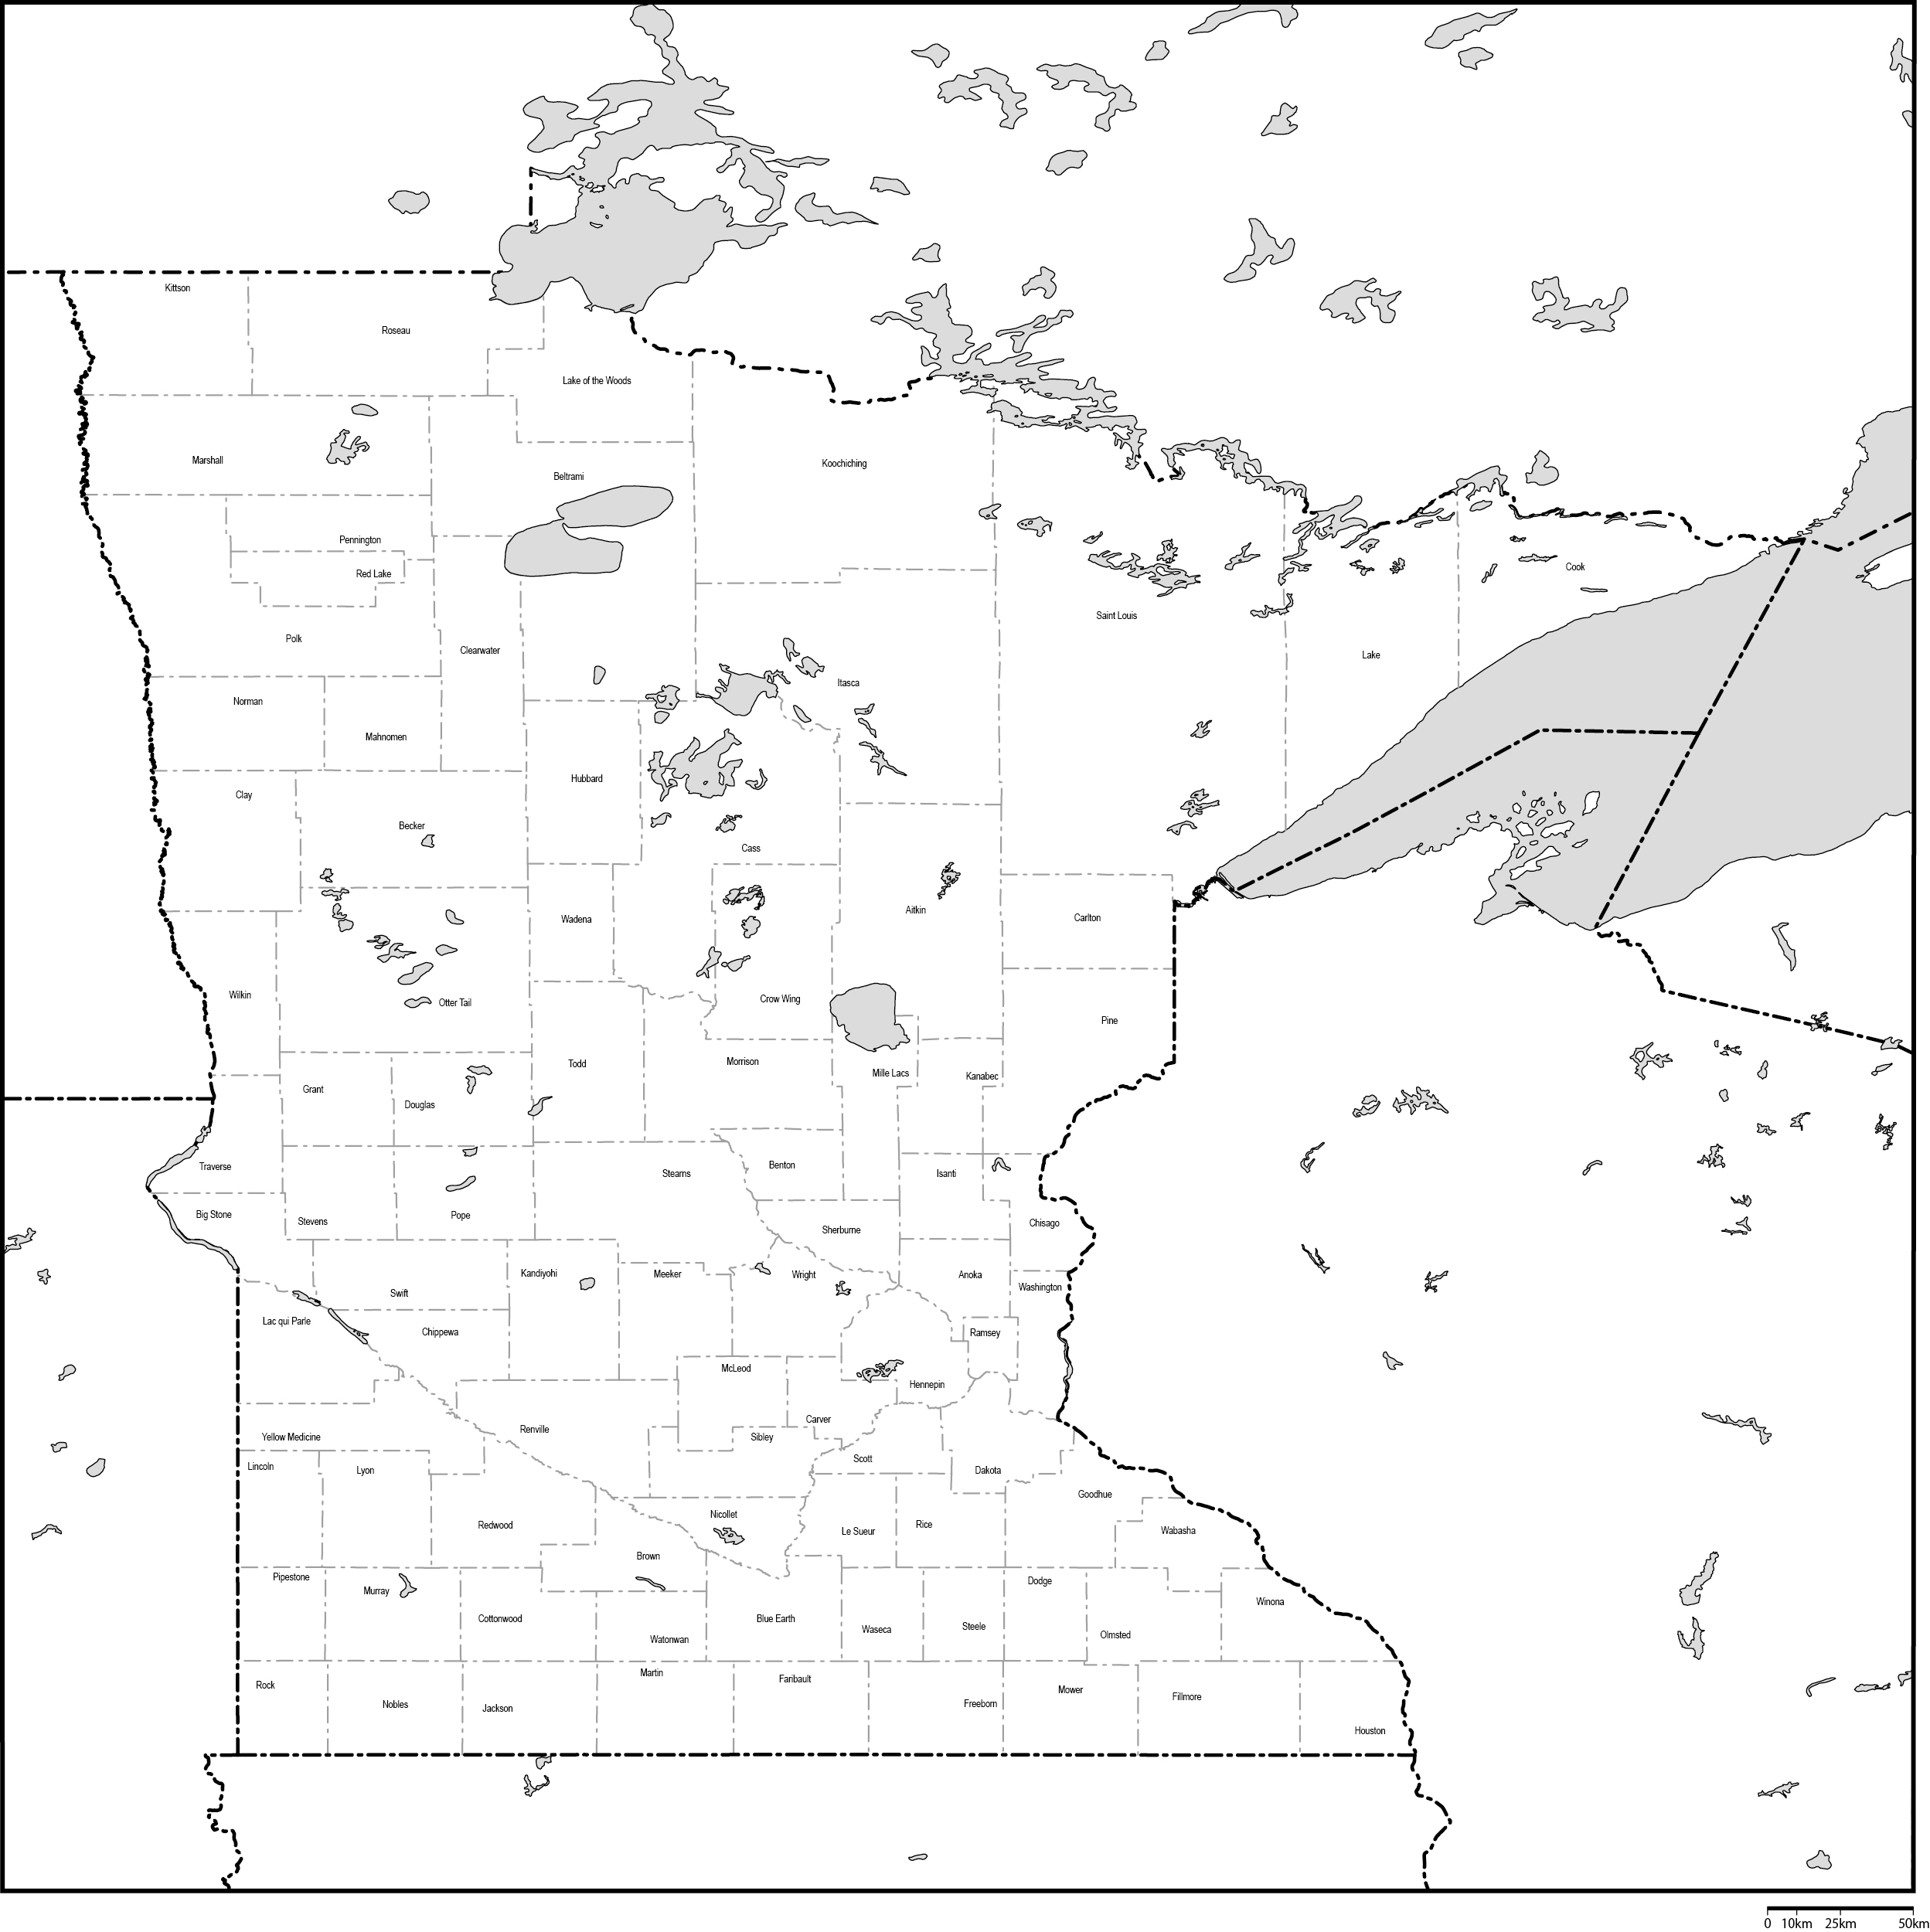 ミネソタ州郡分け白地図郡名あり(英語)フリーデータの画像